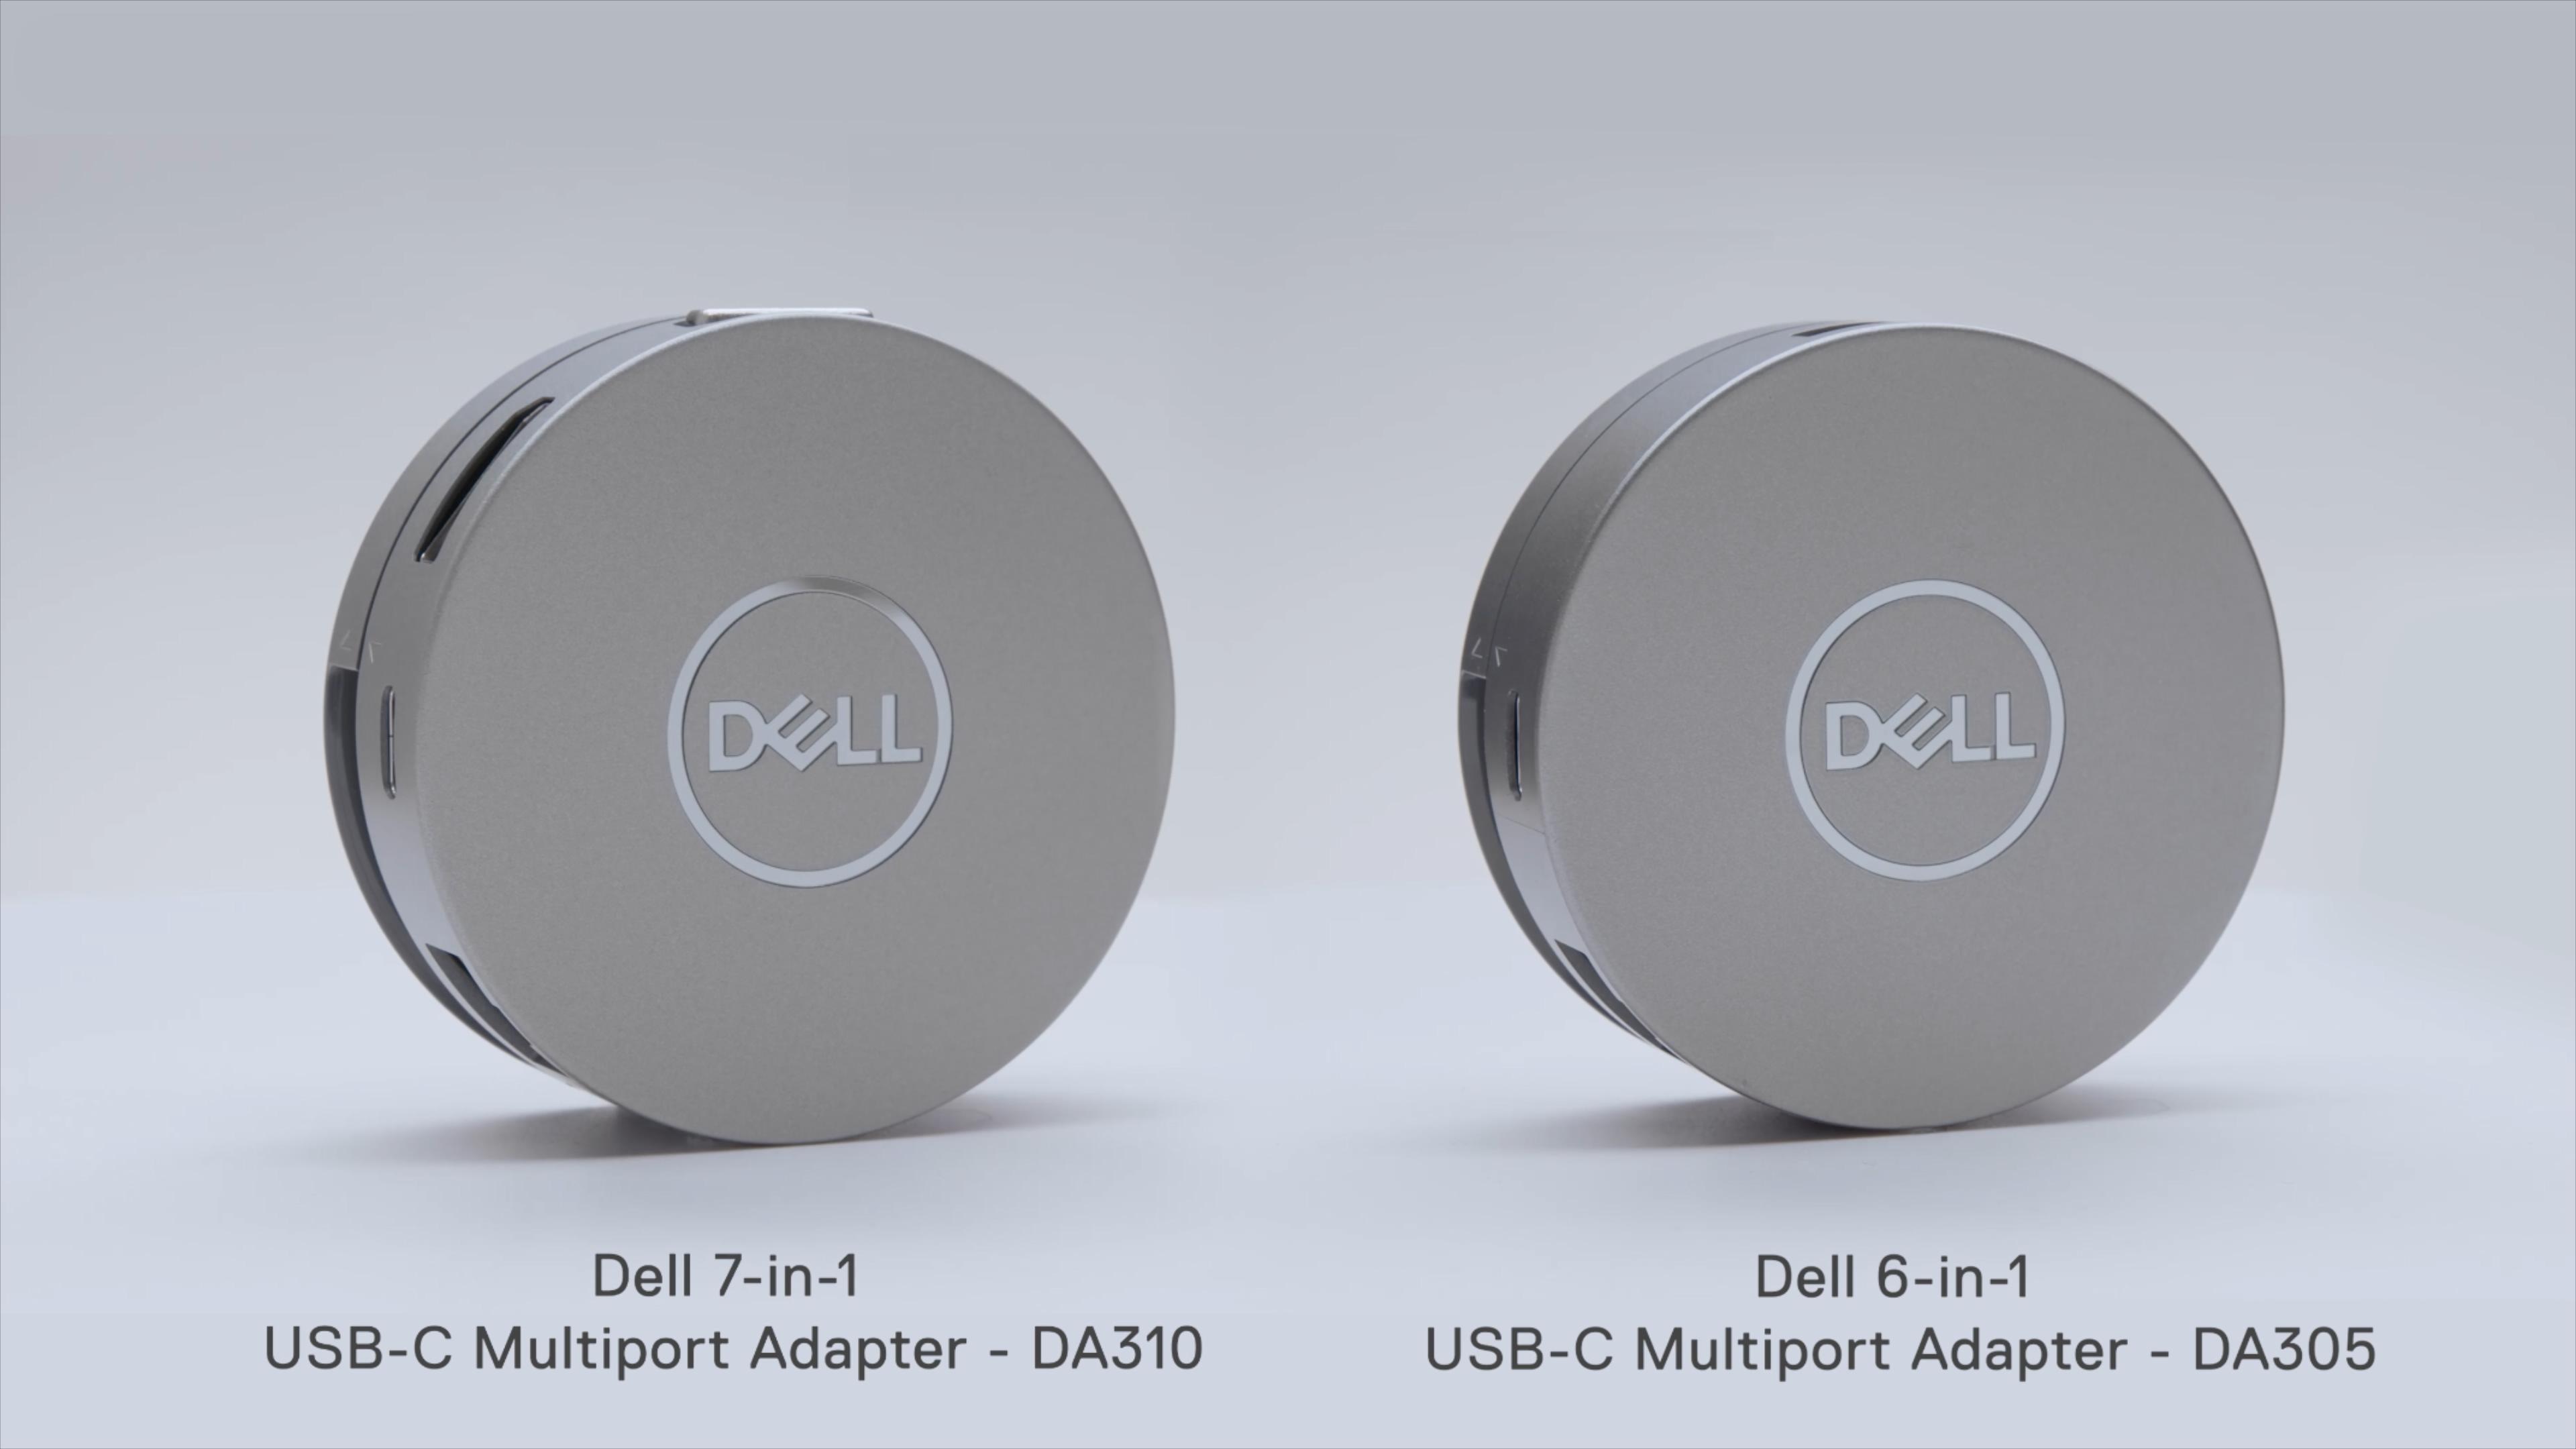 Dell 7-in-1 and 6-in-1 USB-C Multiport Adapter - DA310 and DA305